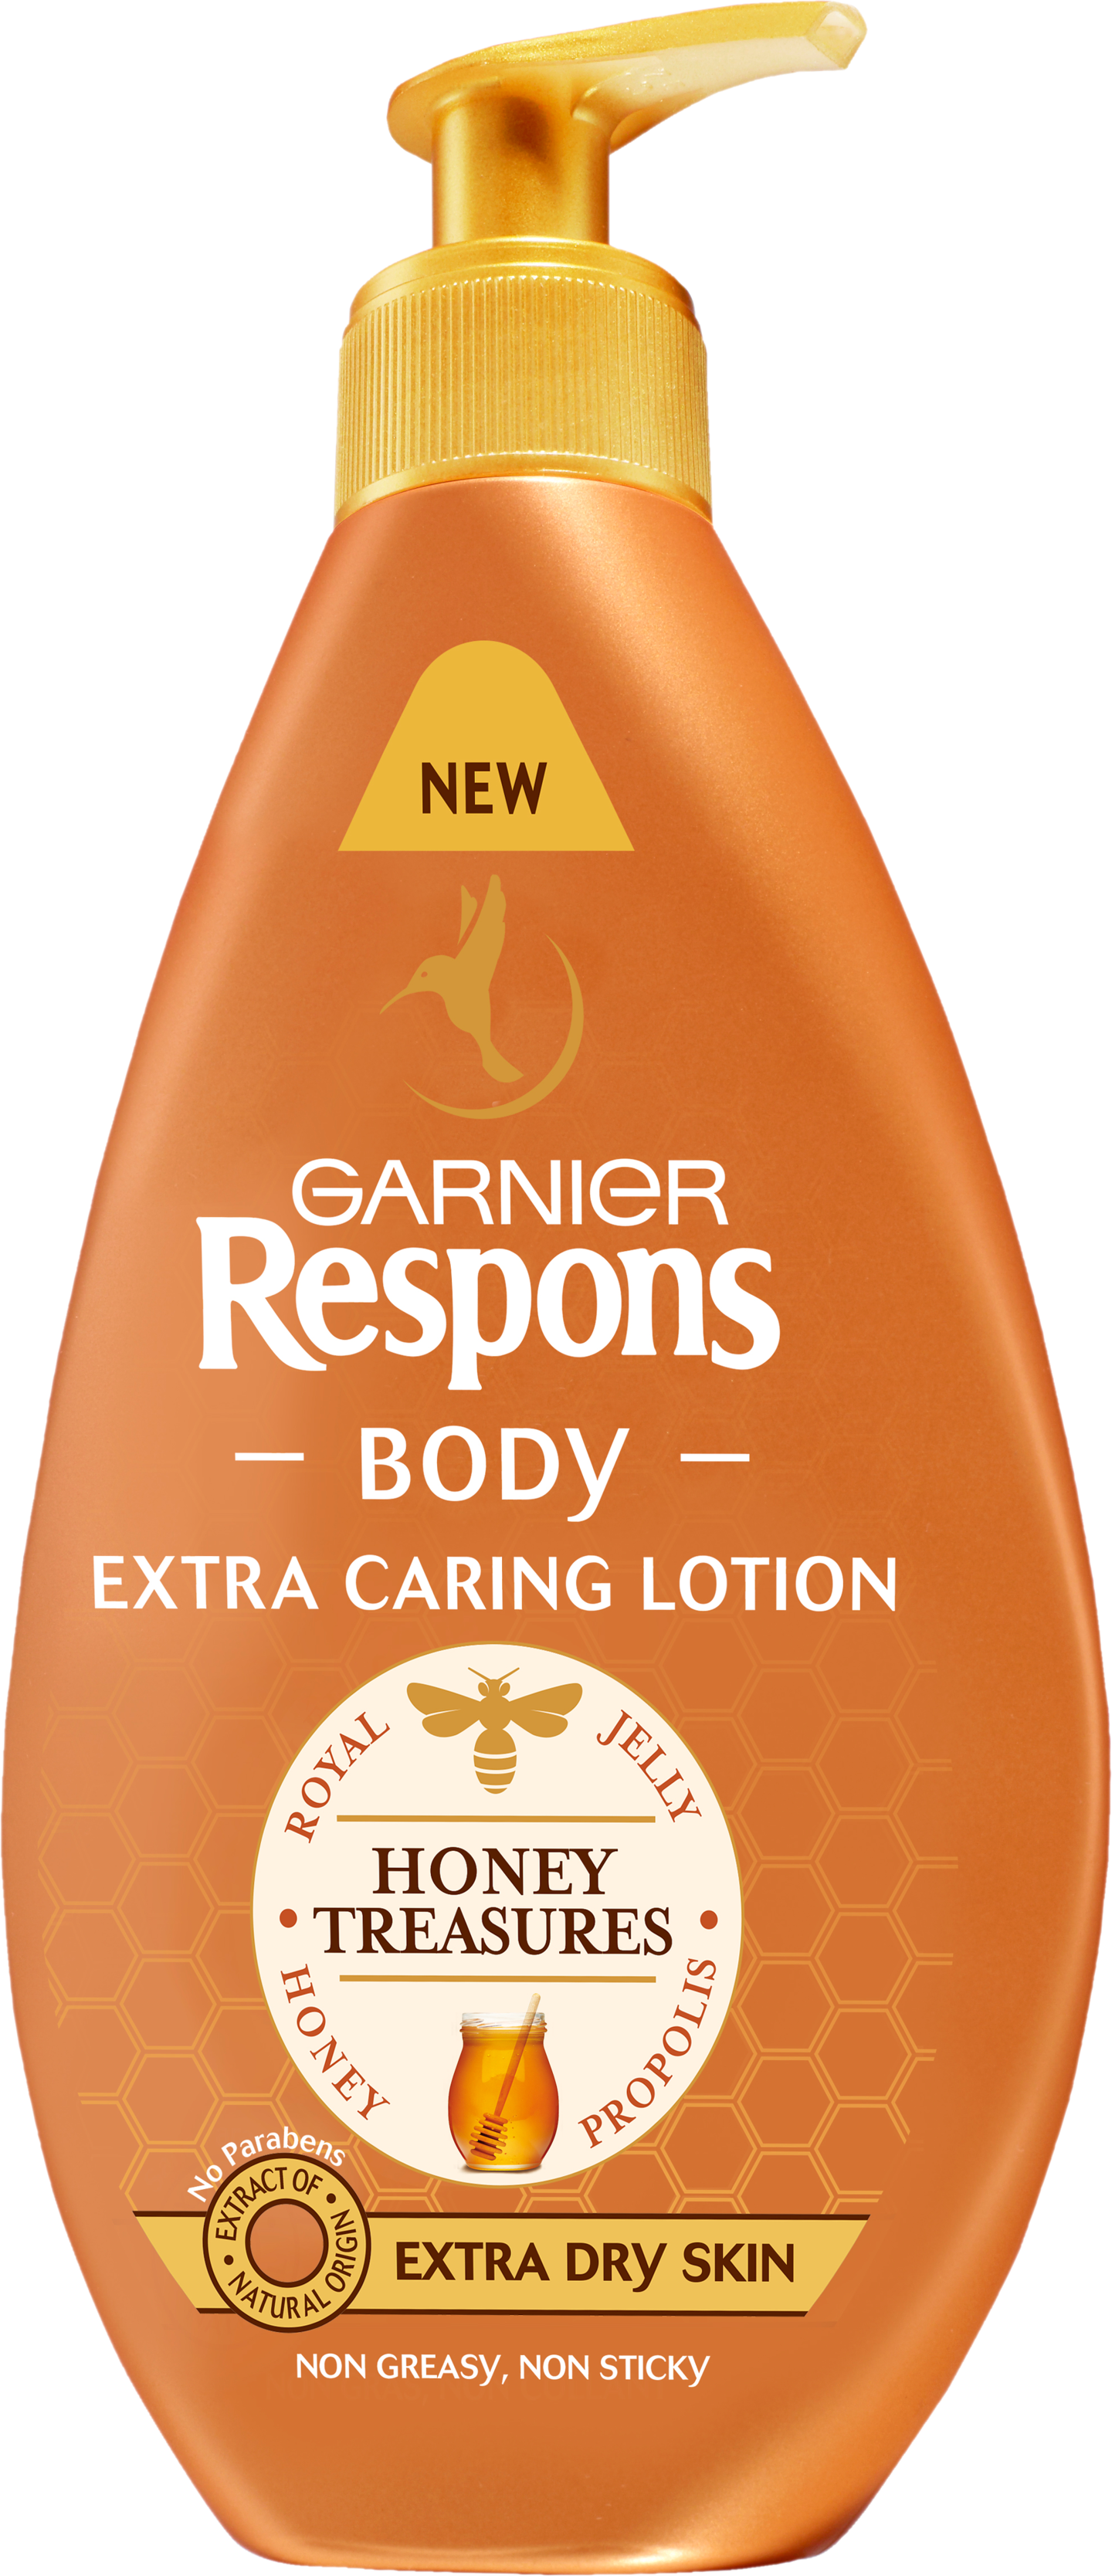 Garnier Respons Body 400 ml Honey Treasures Repairing Lotion vartaloemulsio erittäin kuivalle iholle